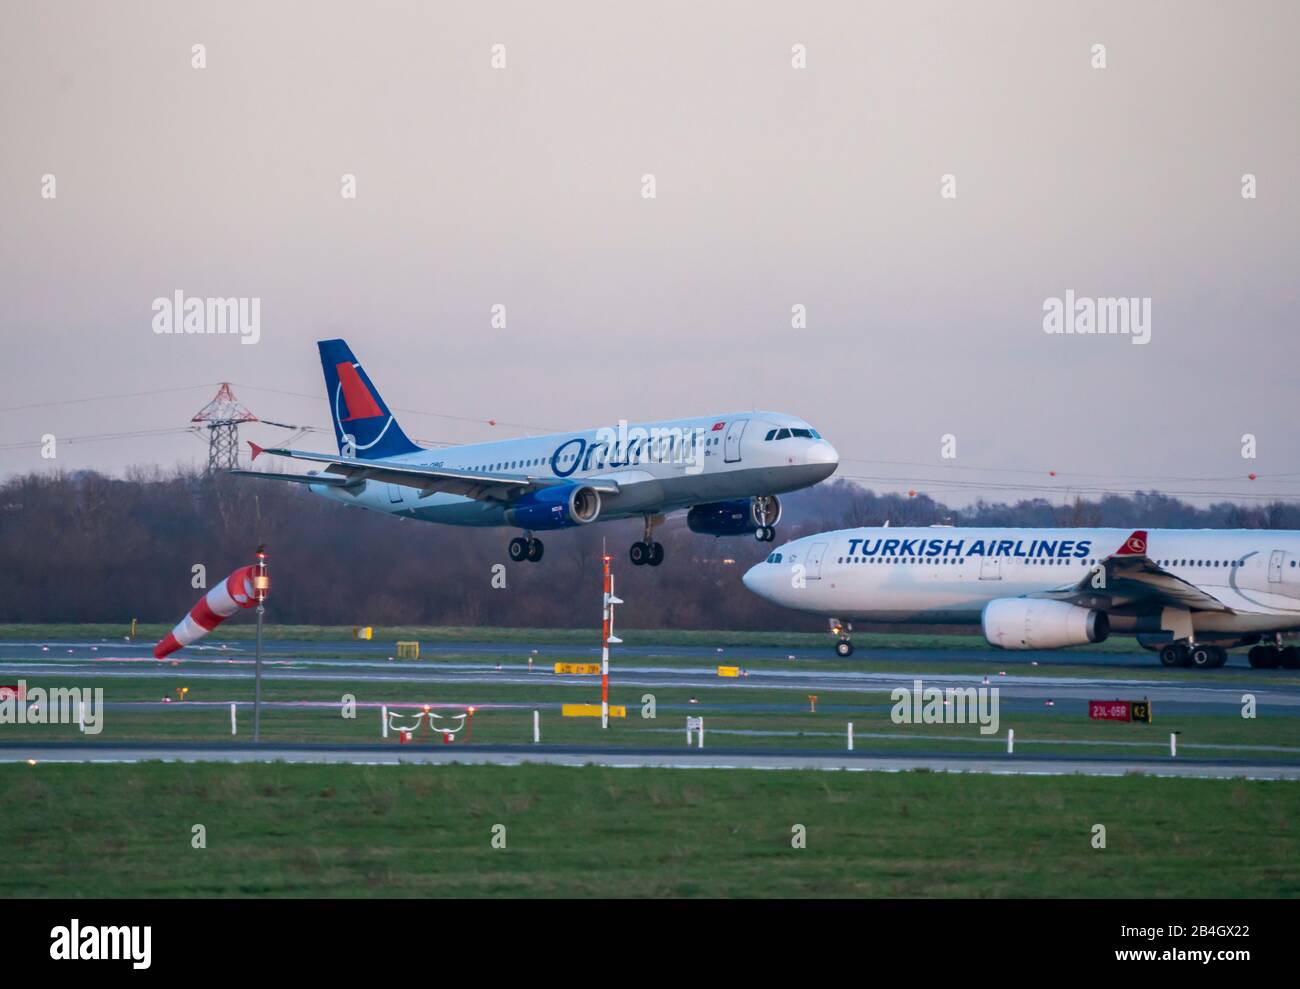 Aeropuerto Internacional de DŸsseldorf, DUS, avión en aterrizaje, Onur Air, Airbus A320-233, Turkish Airlines, Airbus A330-300, Foto de stock